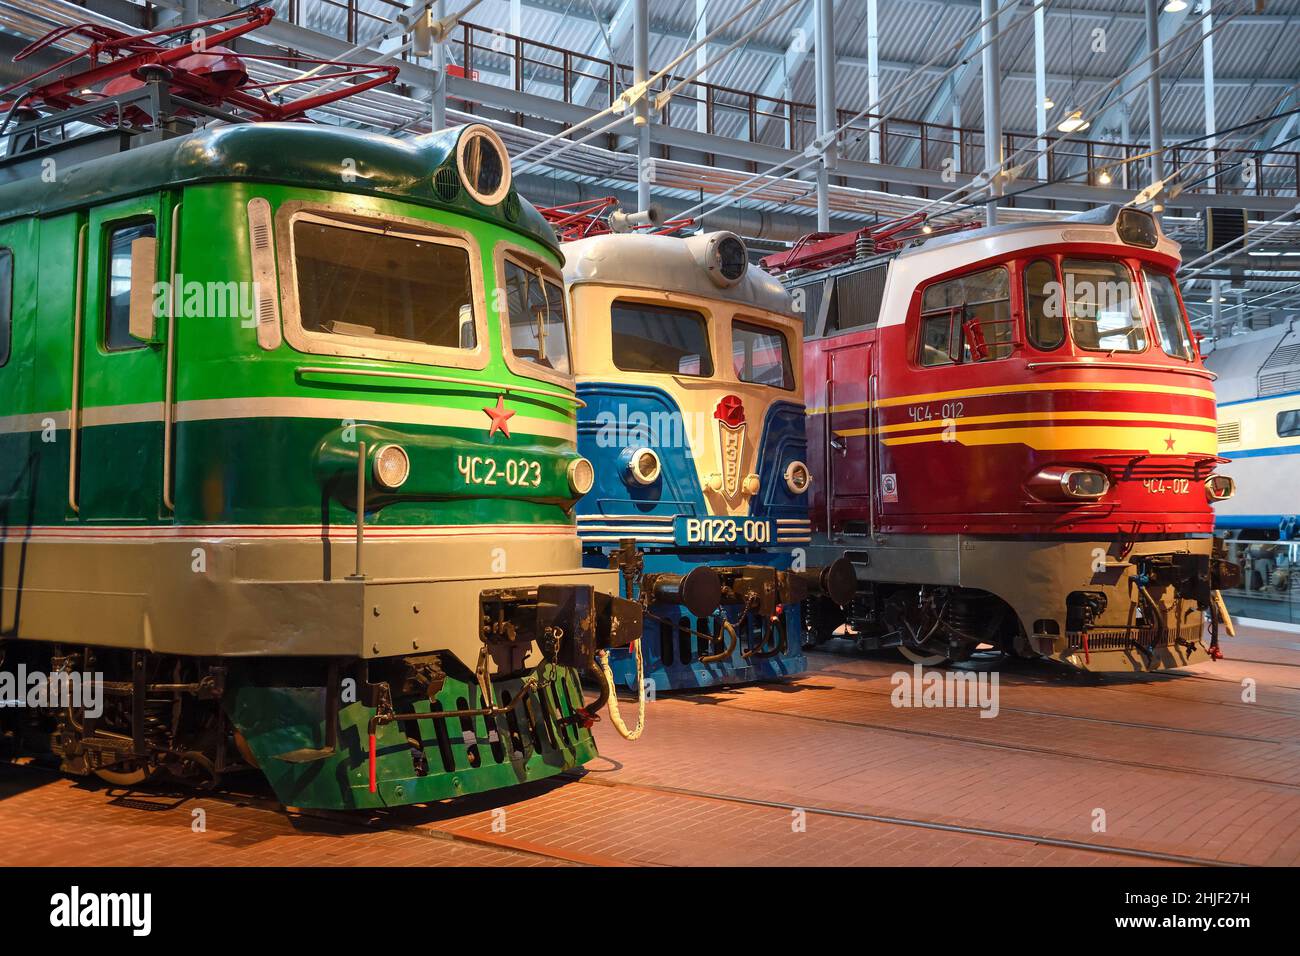 SANKT PETERSBURG, RUSSLAND - 12. JANUAR 2022: Drei elektrische Lokomotiven, die zu unterschiedlichen Zeiten auf den Eisenbahnlinien der Sowjetunion eingesetzt wurden. Ausstellung der Stockfoto